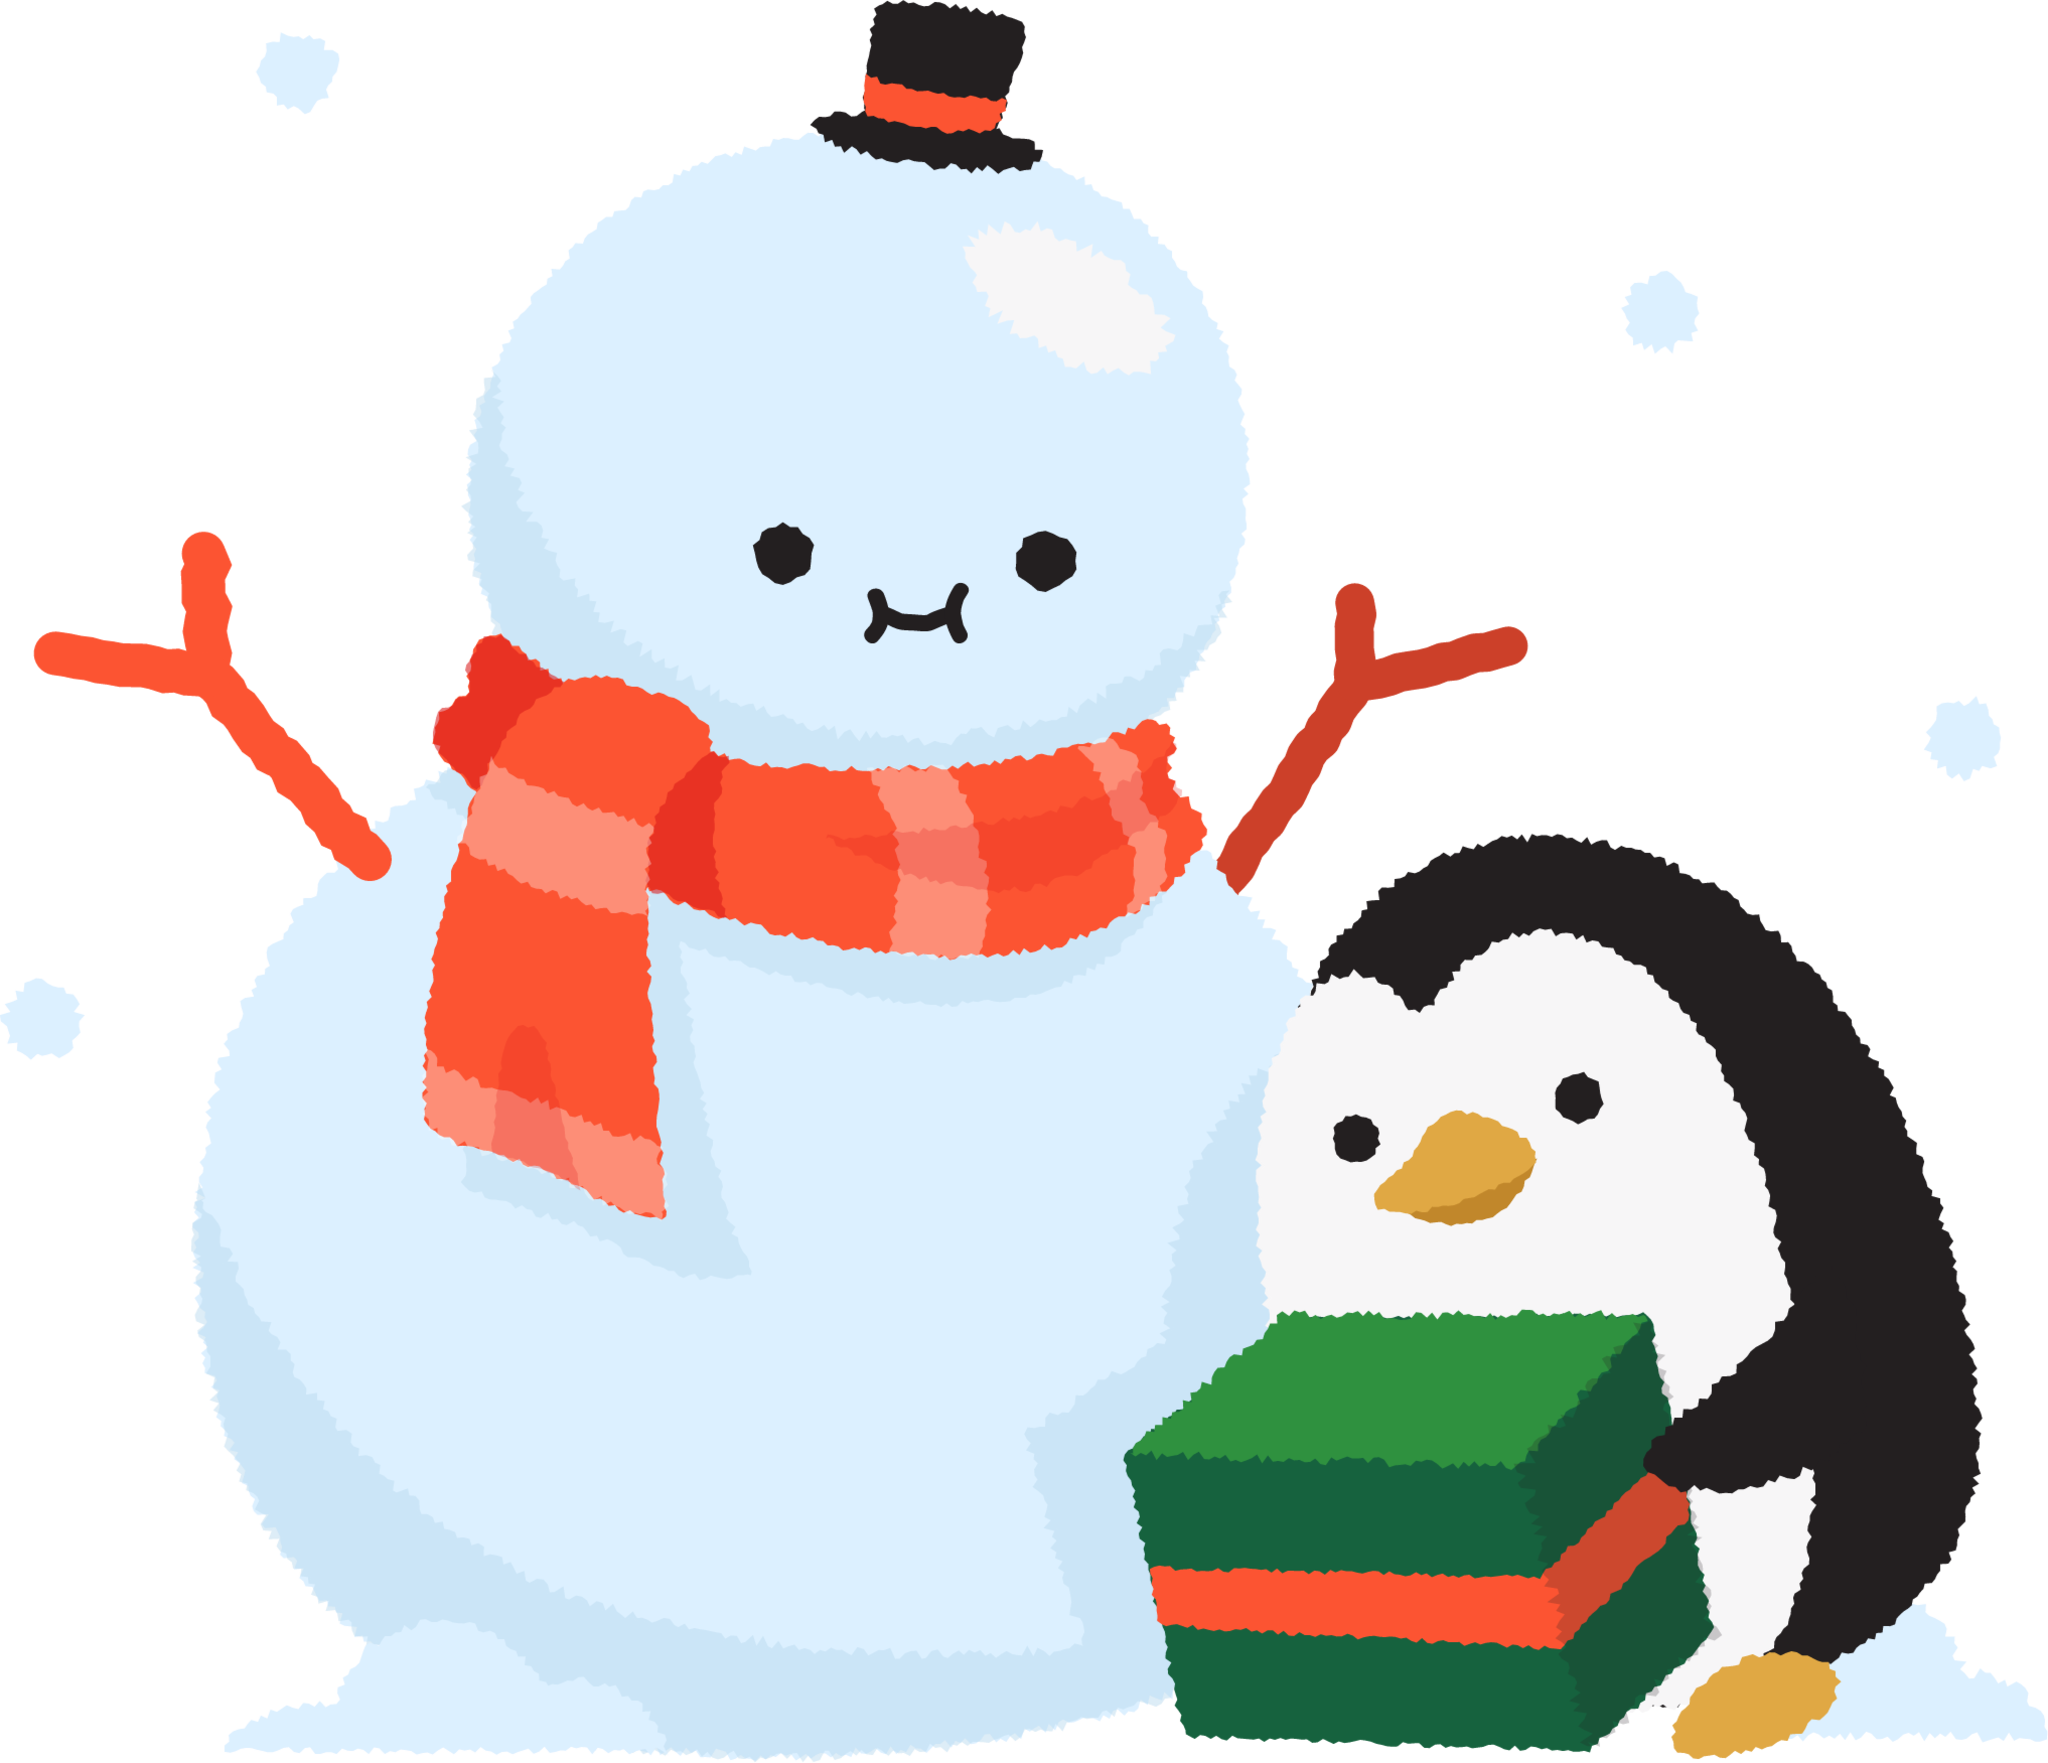 snowman illustration